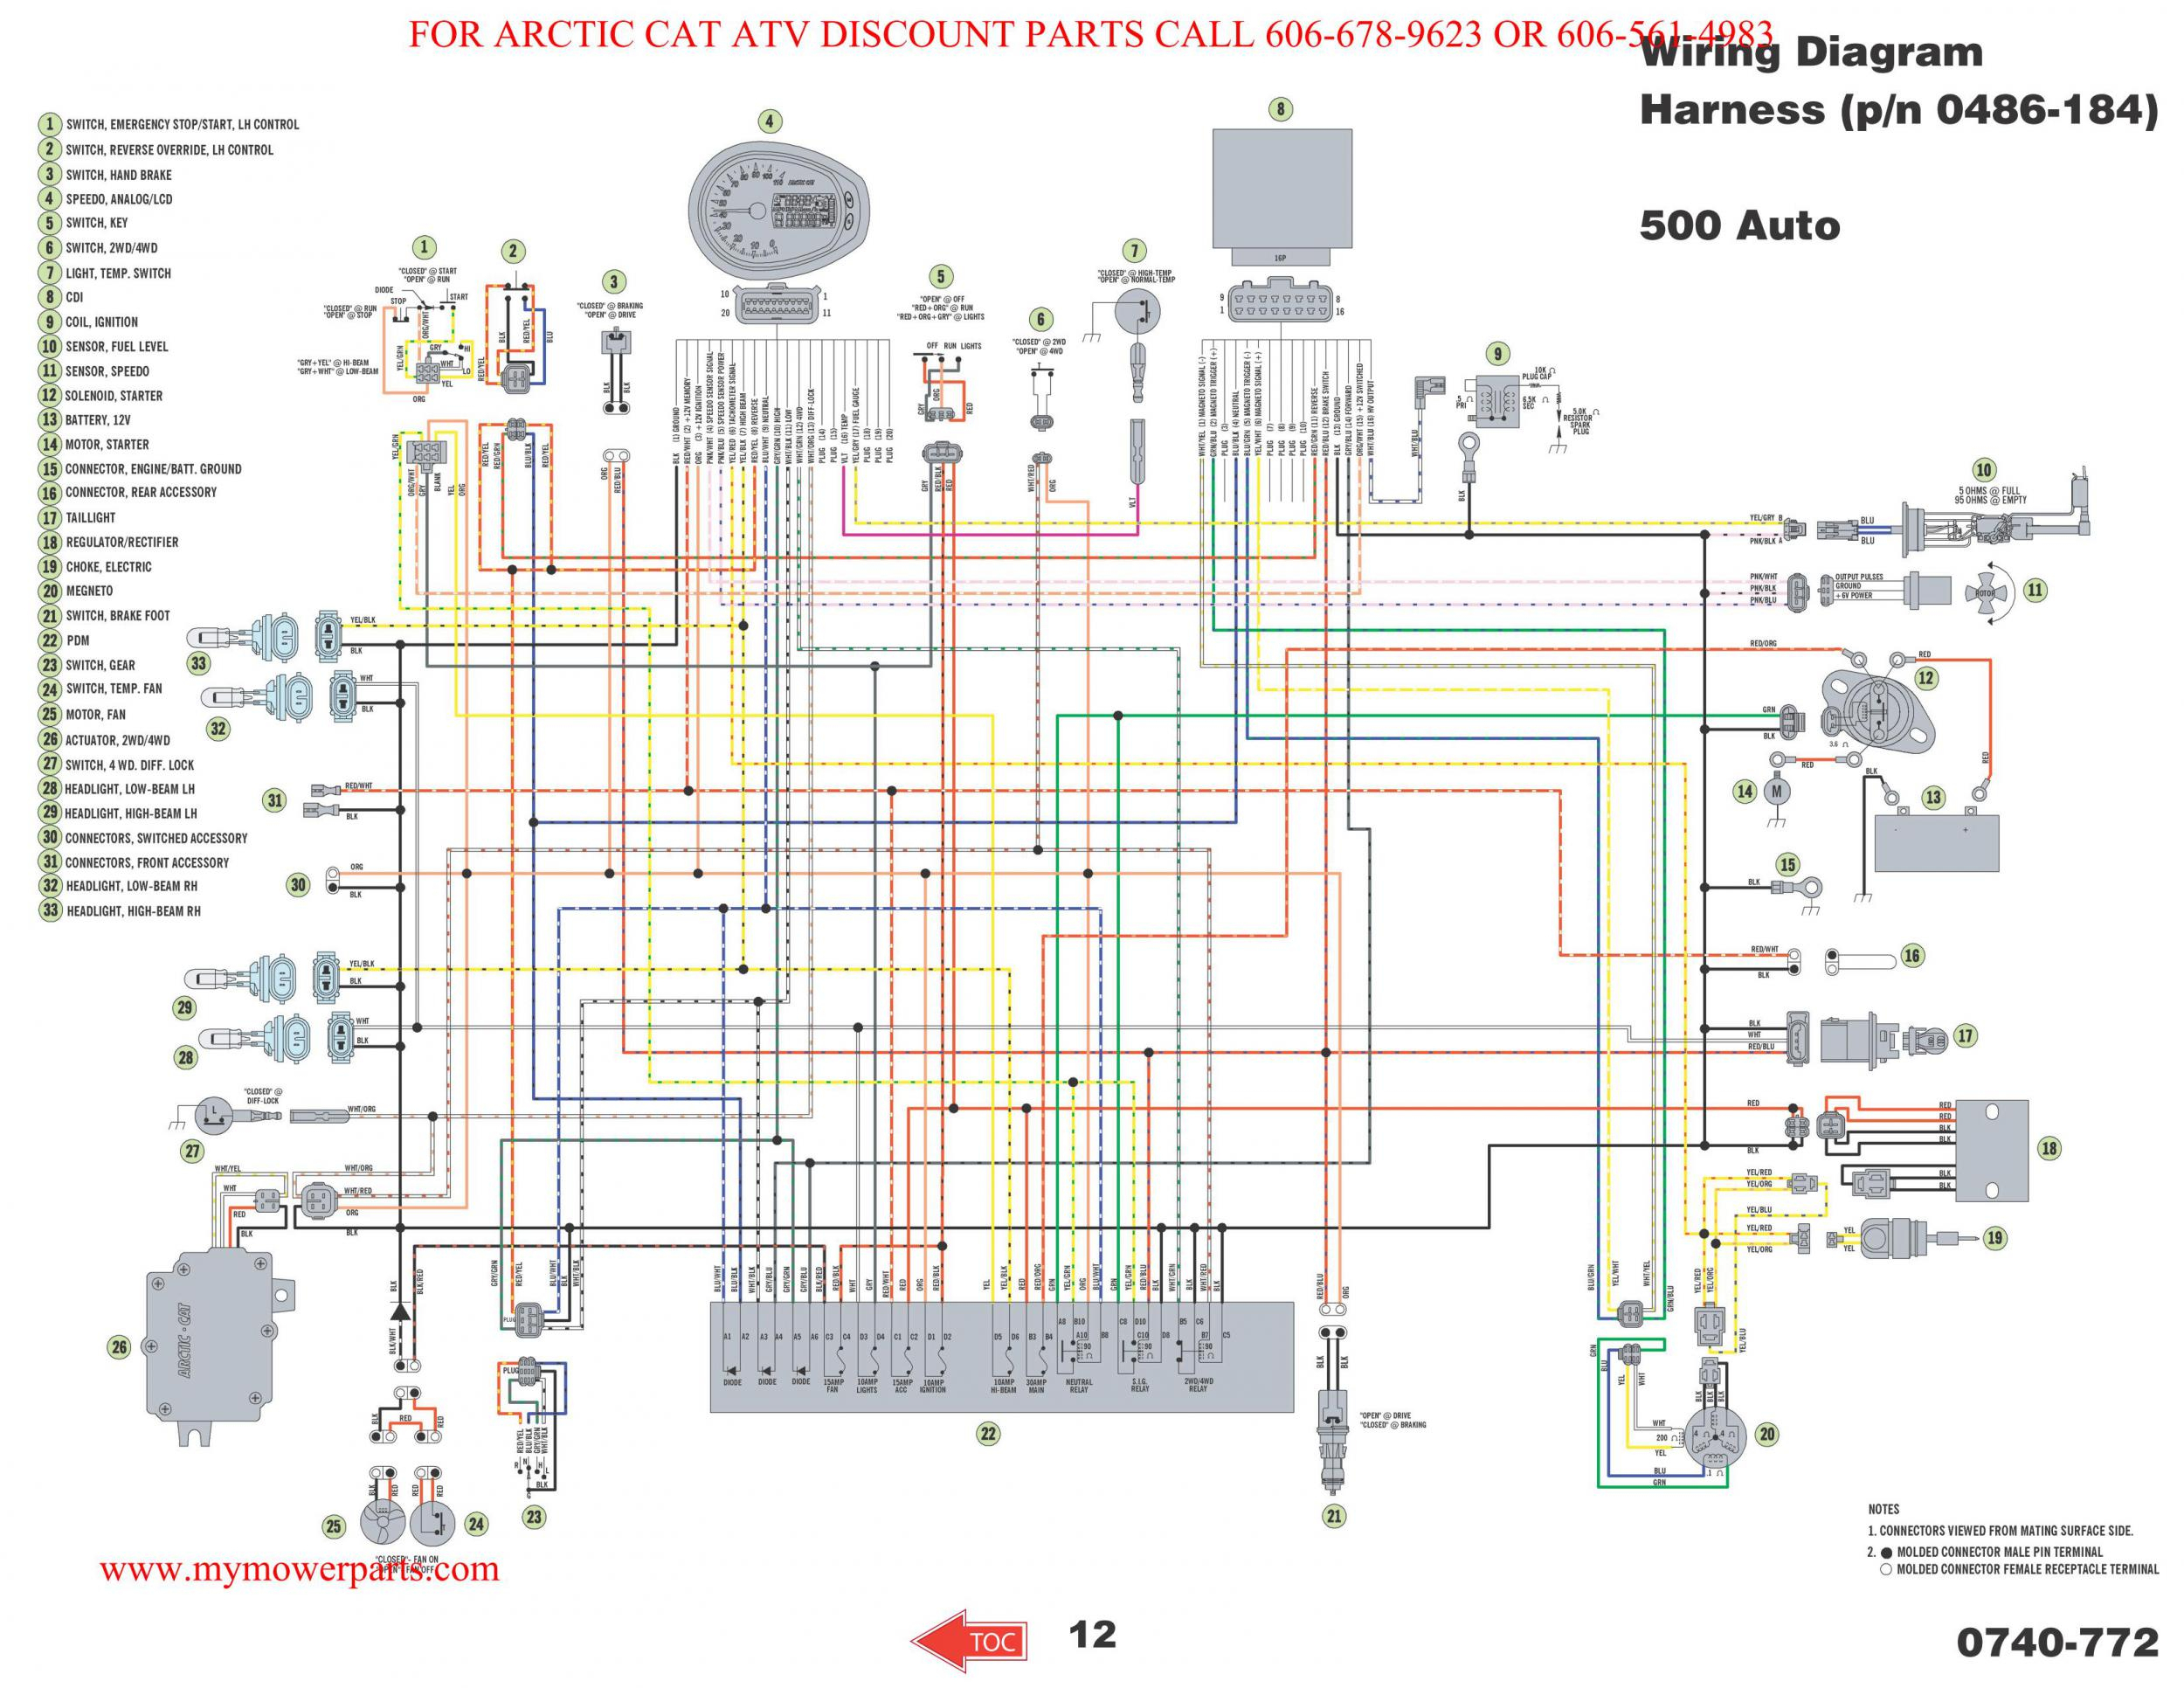 Polaris Sportsman Wiring Diagram | Wiring Diagram - Polaris Sportsman 500 Wiring Diagram Pdf